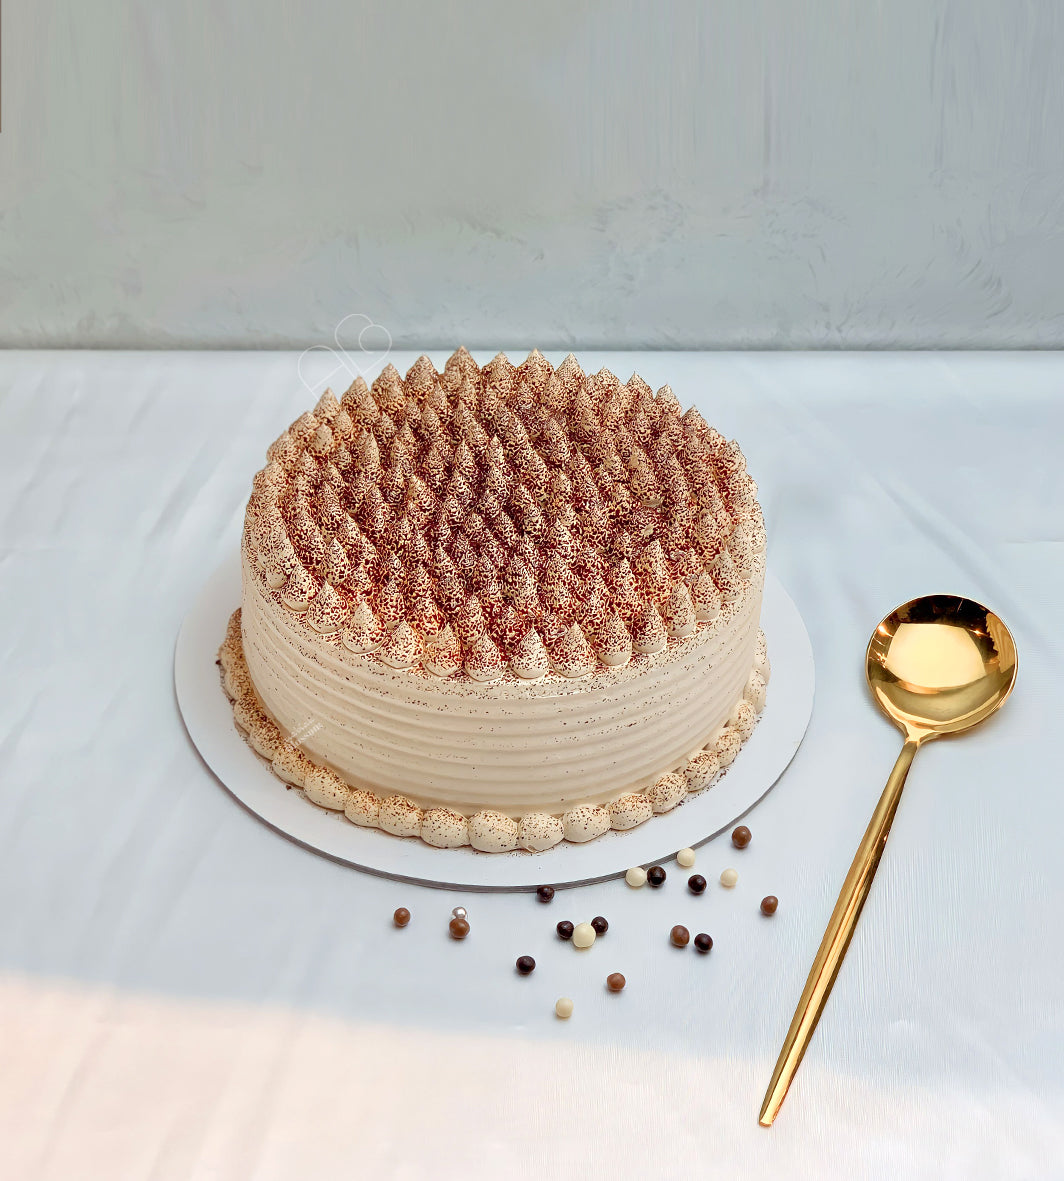 Tiramisu Cake - Cakes & Dessert Bars - Tiramisu - Cake - Arabianblossom